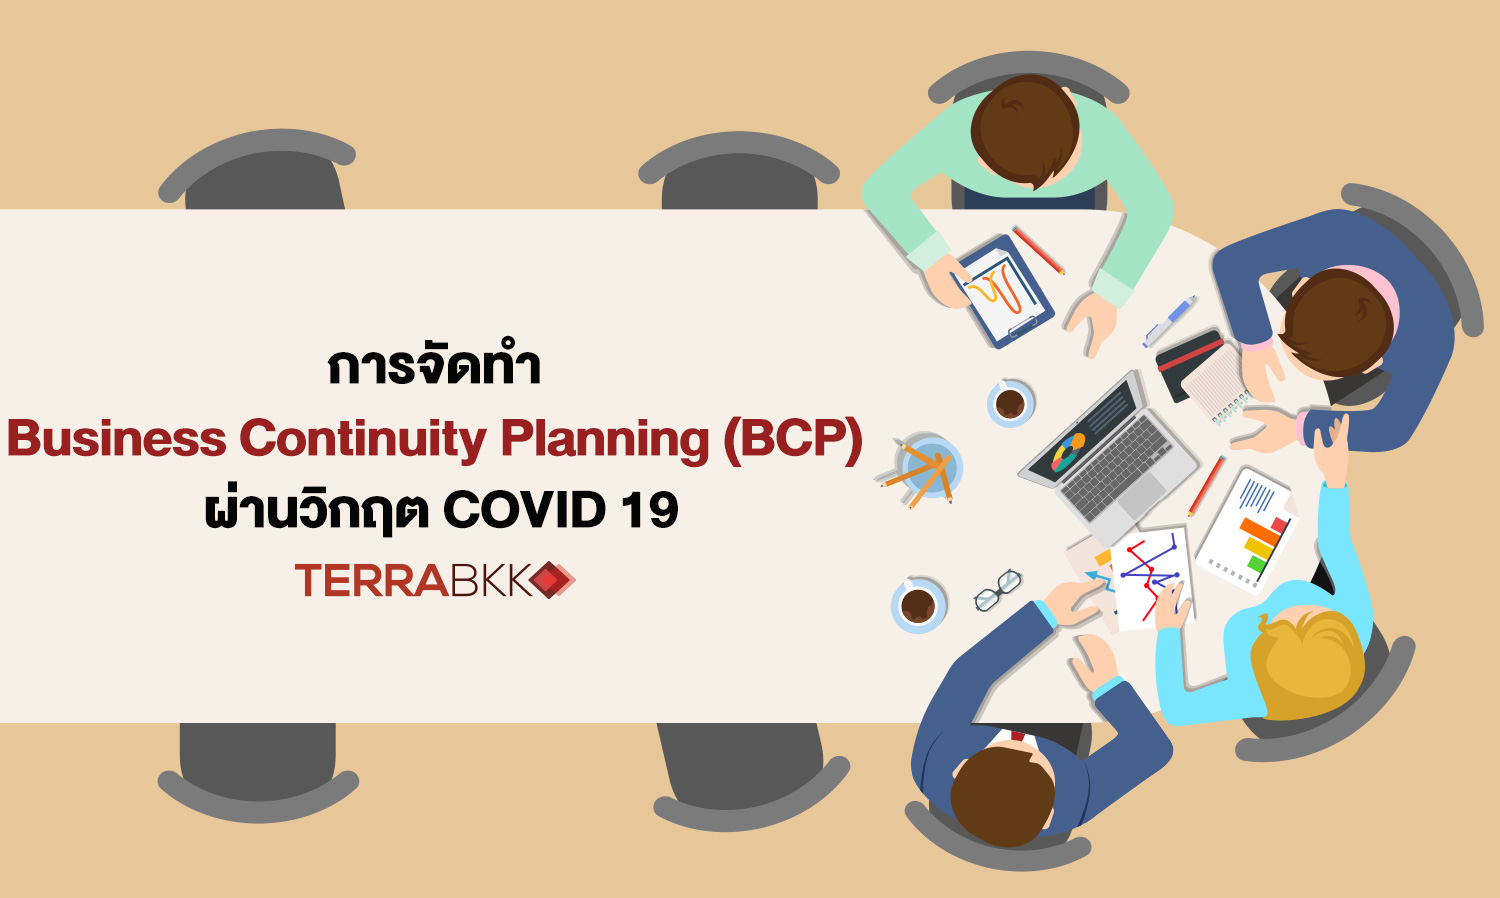 การจัดทำ Business Continuity Planning (BCP) ผ่านวิกฤต COVID 19